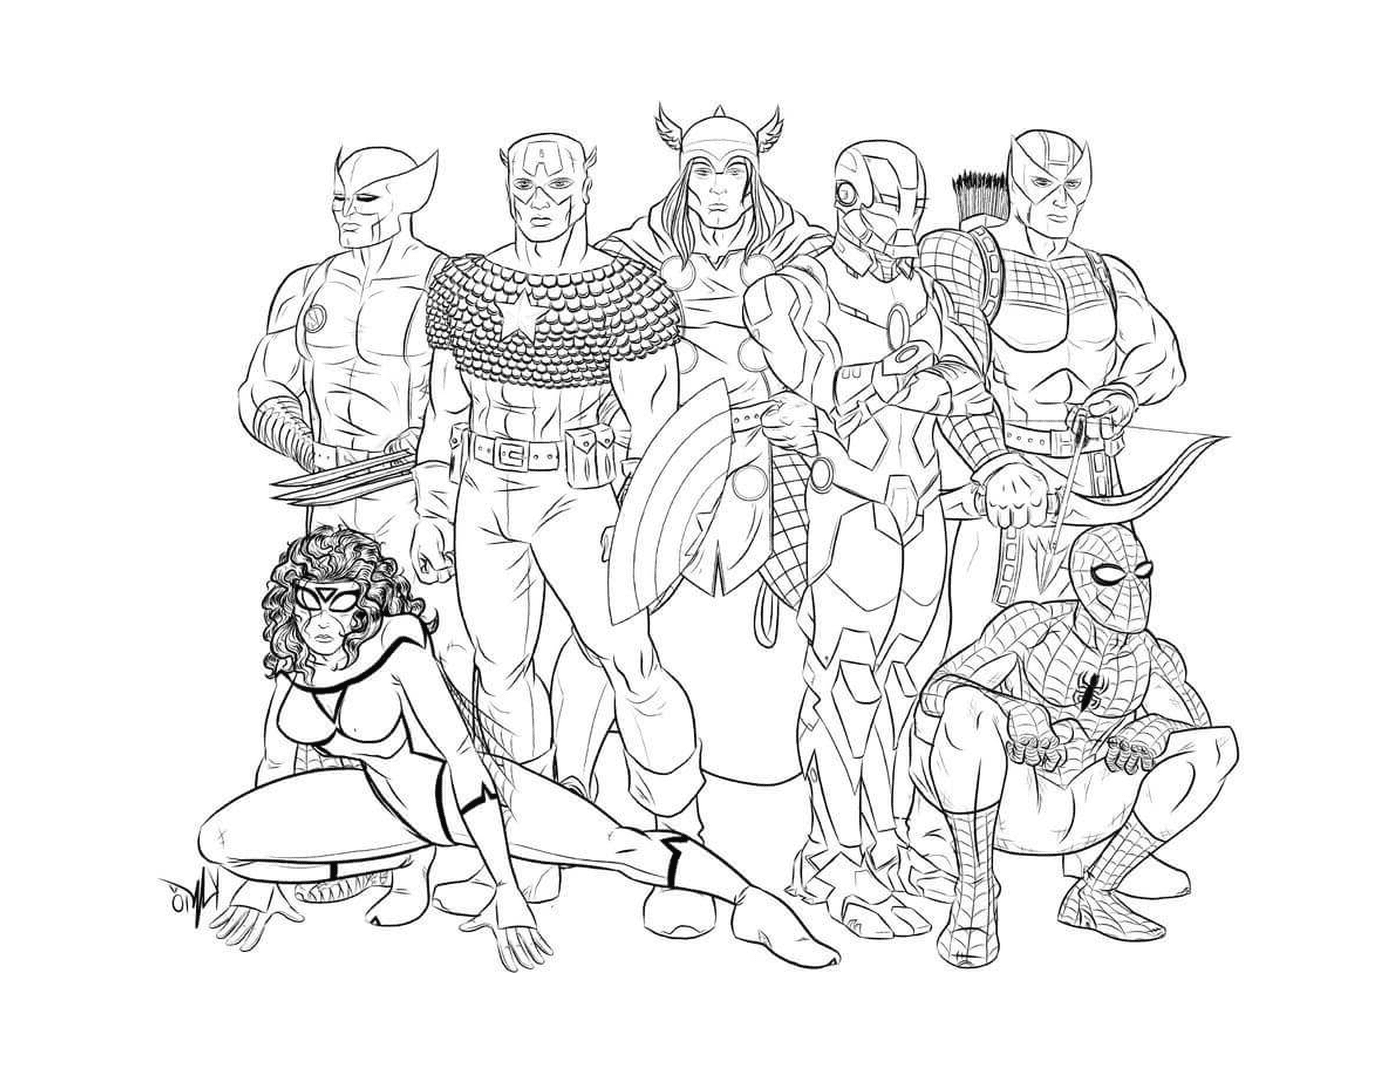  Мстители, геройская команда 